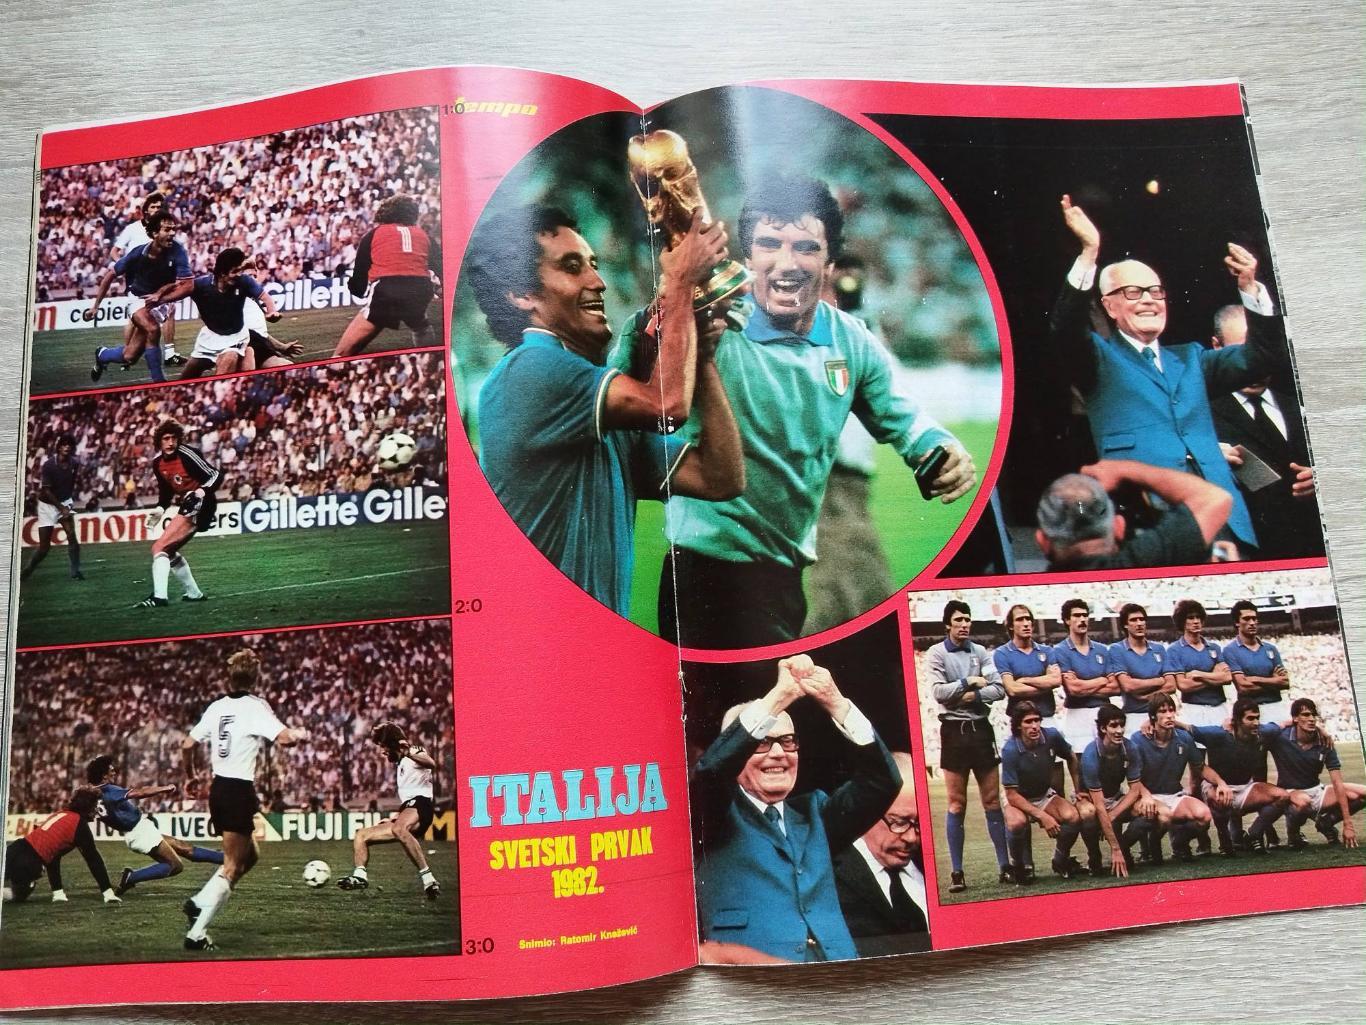 Журнал Tempo. Чемпионат мира 1982. Постер - Италия чемпион мира 82 1